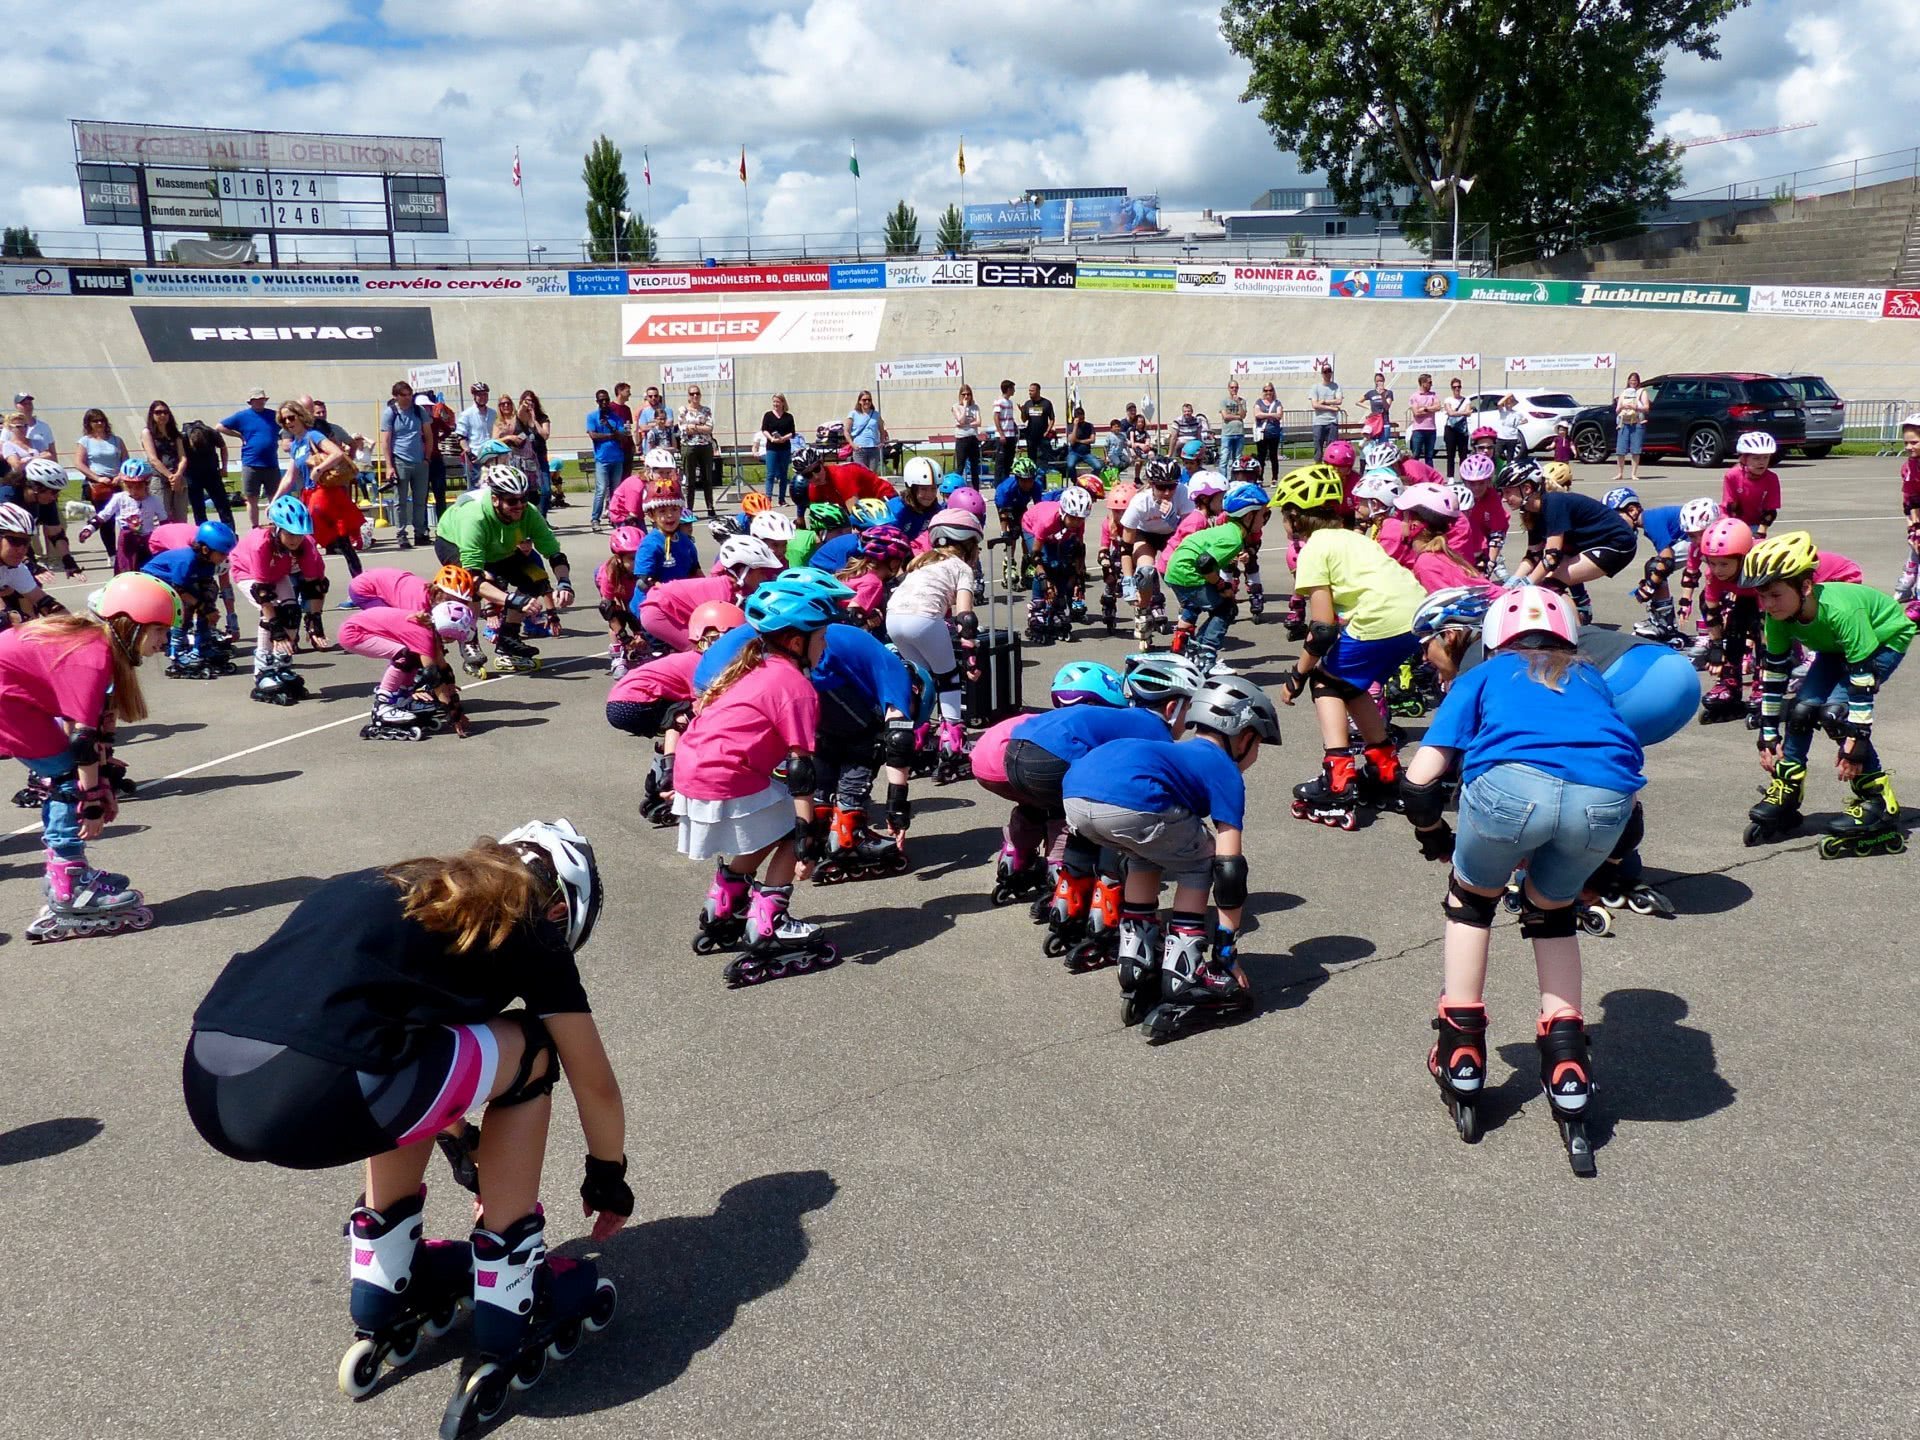 Un gruppo di bambini sui pattini a rotelle durante una flashmob